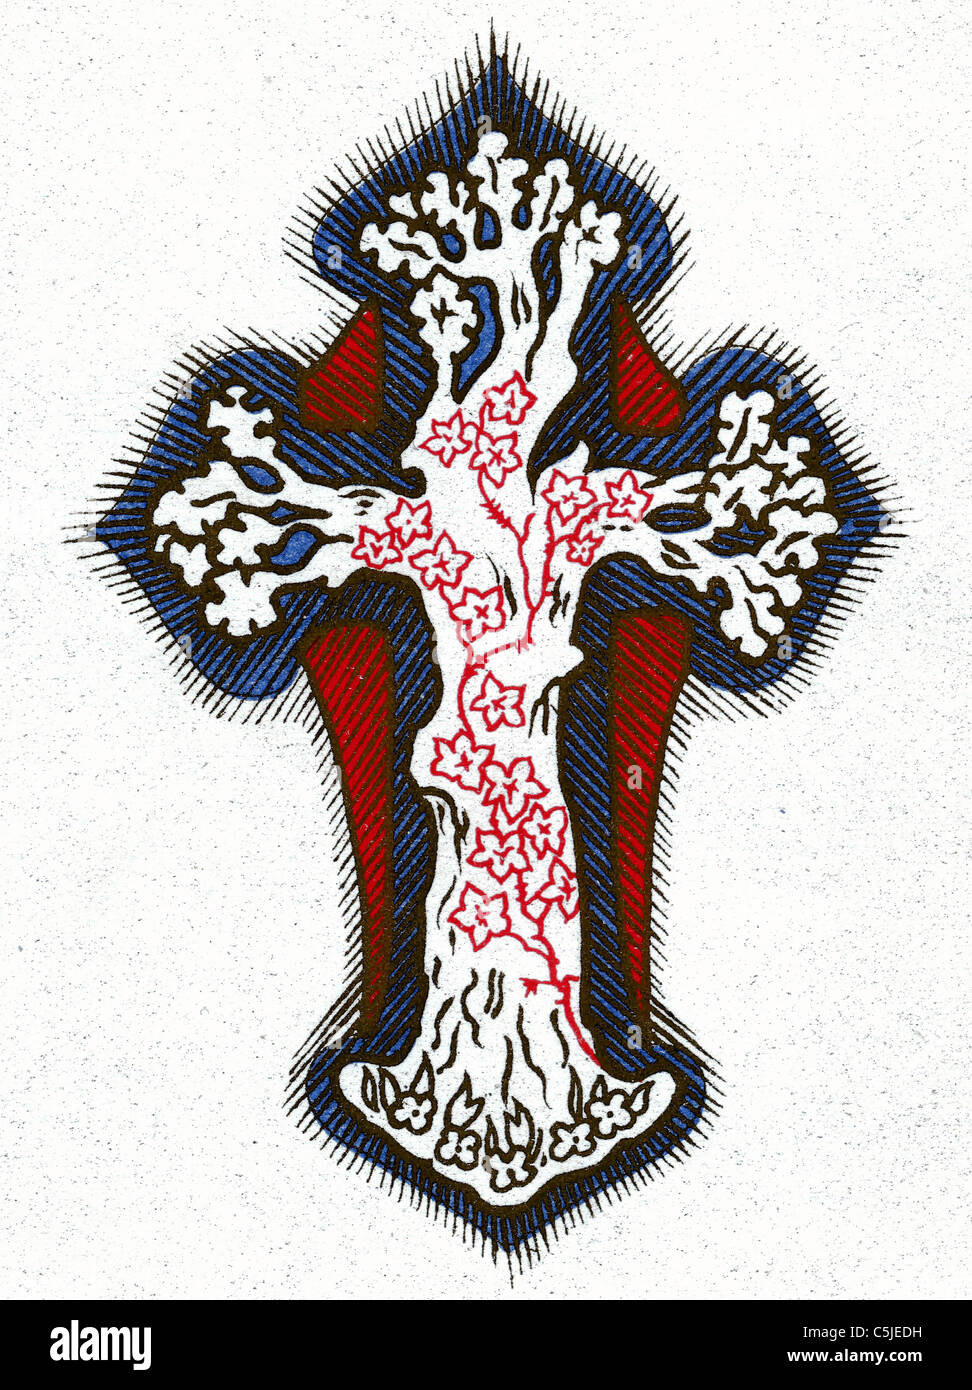 Cruz cristiana con viñas retorcidas, ramitas y ramas Foto de stock